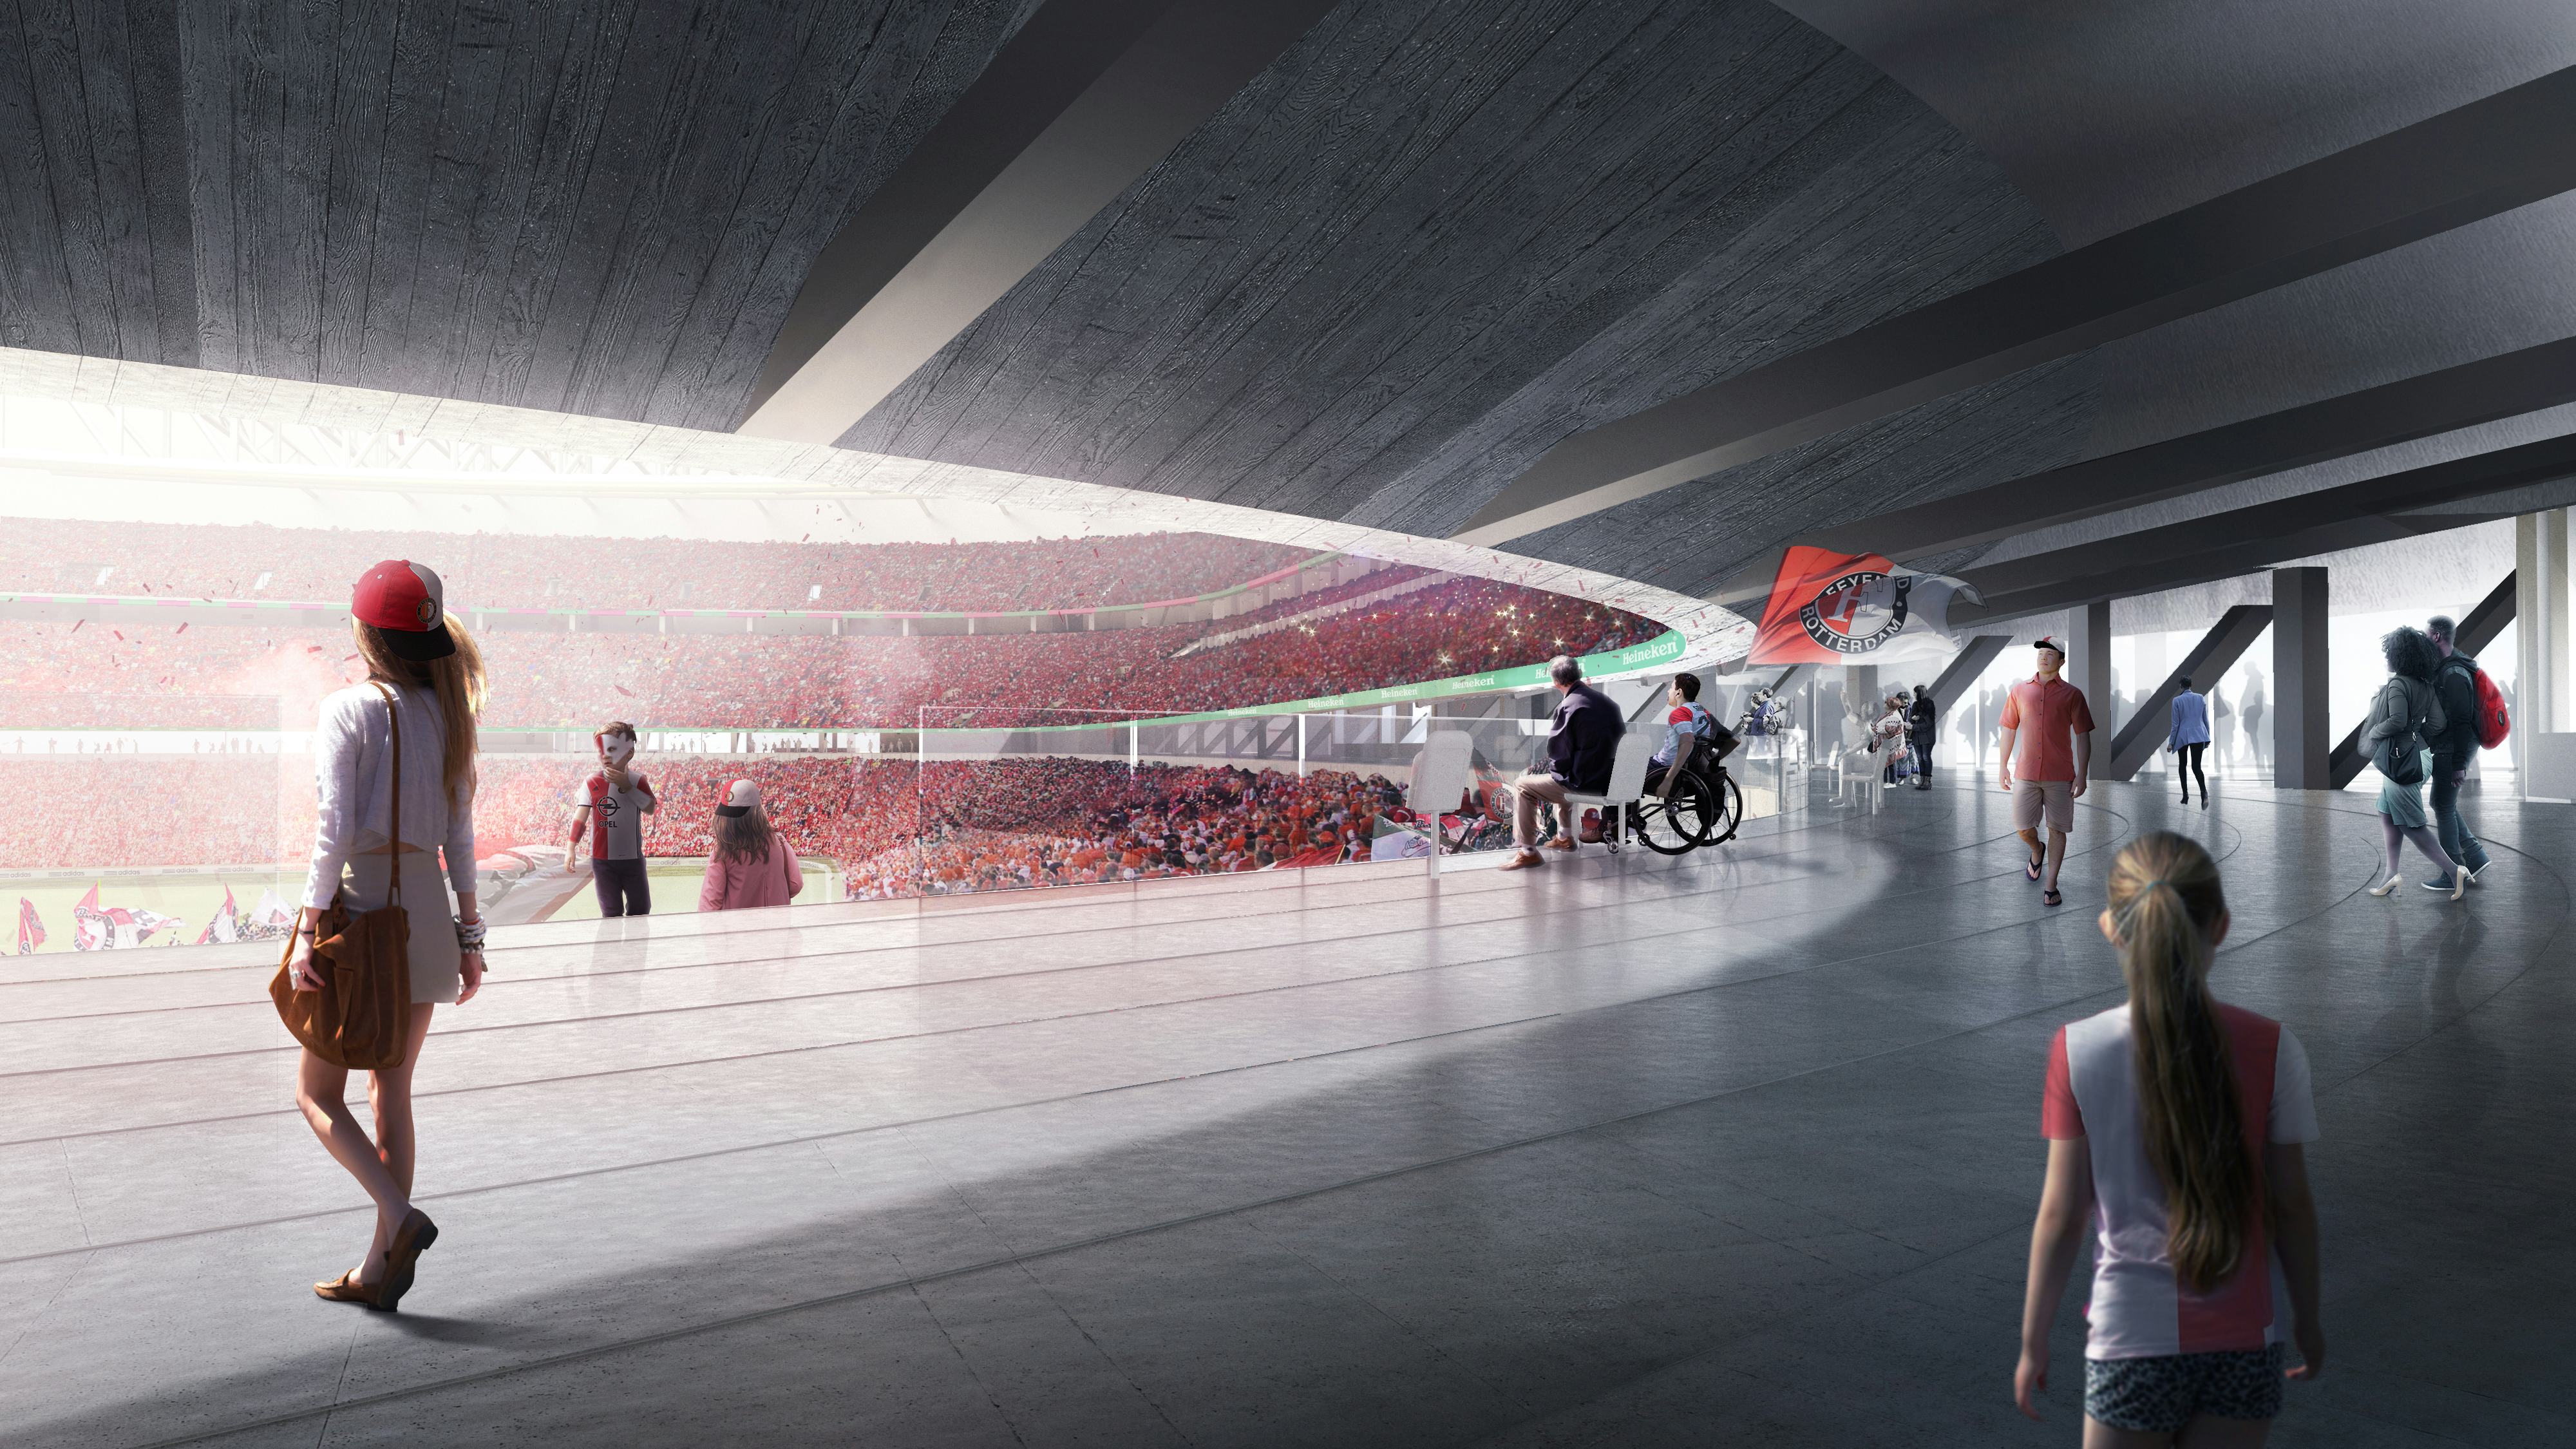 Ontwerp OMA/David Gianotten voor nieuw stadion Feyenoord aan de Maas goedgekeurd